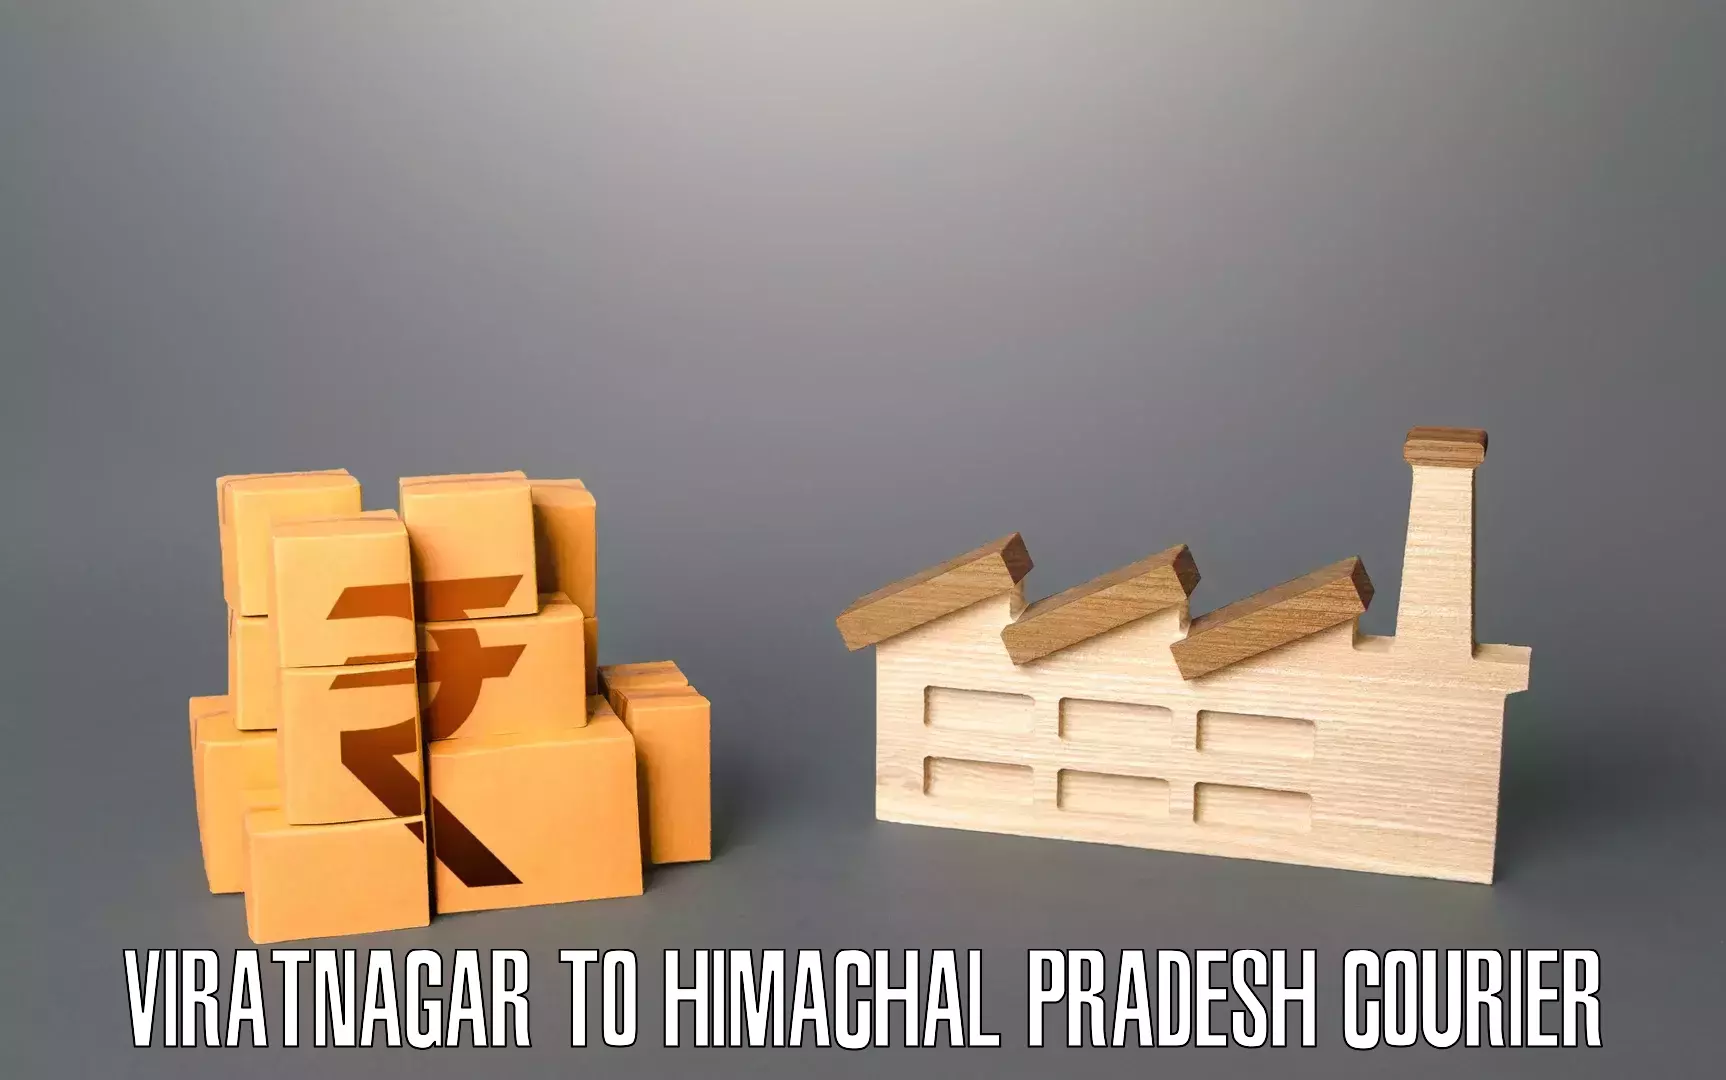 Residential moving experts Viratnagar to Tahliwal